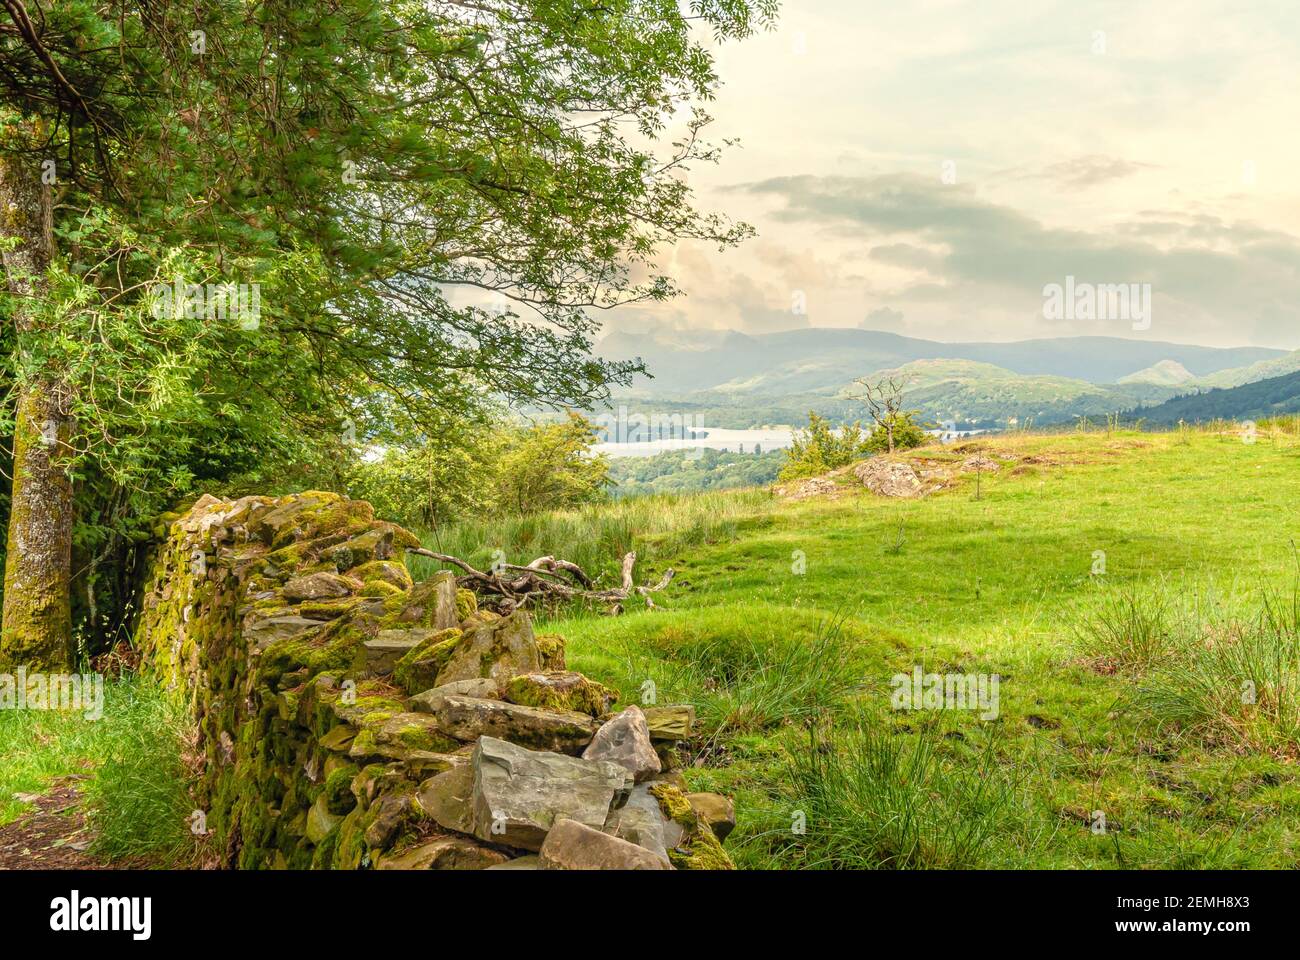 Mur de pierre sèche dans un paysage au parc national de Lake District, Cumbria, Angleterre, Royaume-Uni Banque D'Images